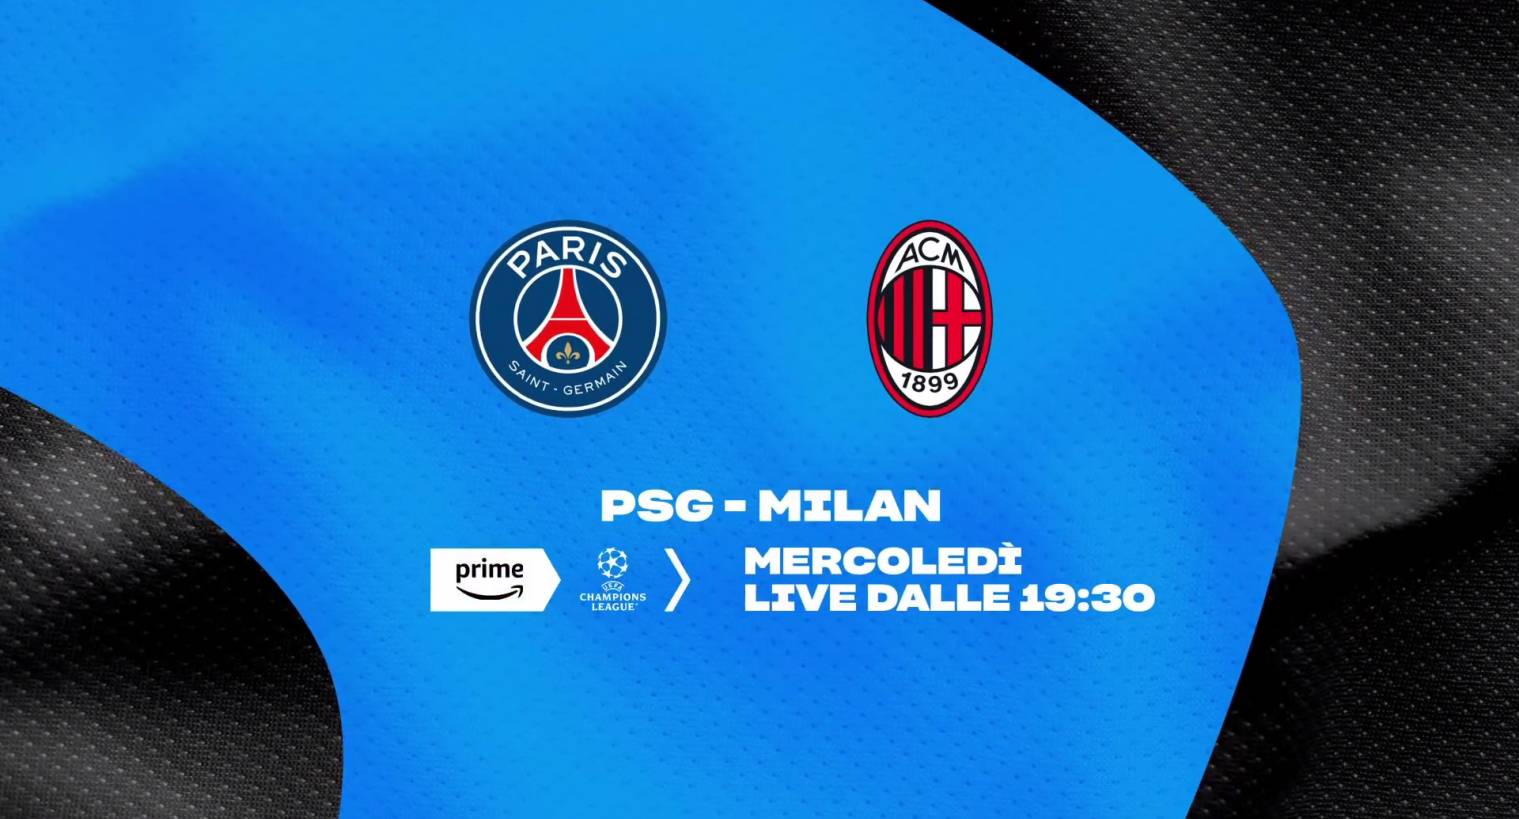 Foto - Champions League: PSG vs. Milan in Diretta Streaming su Prime Video